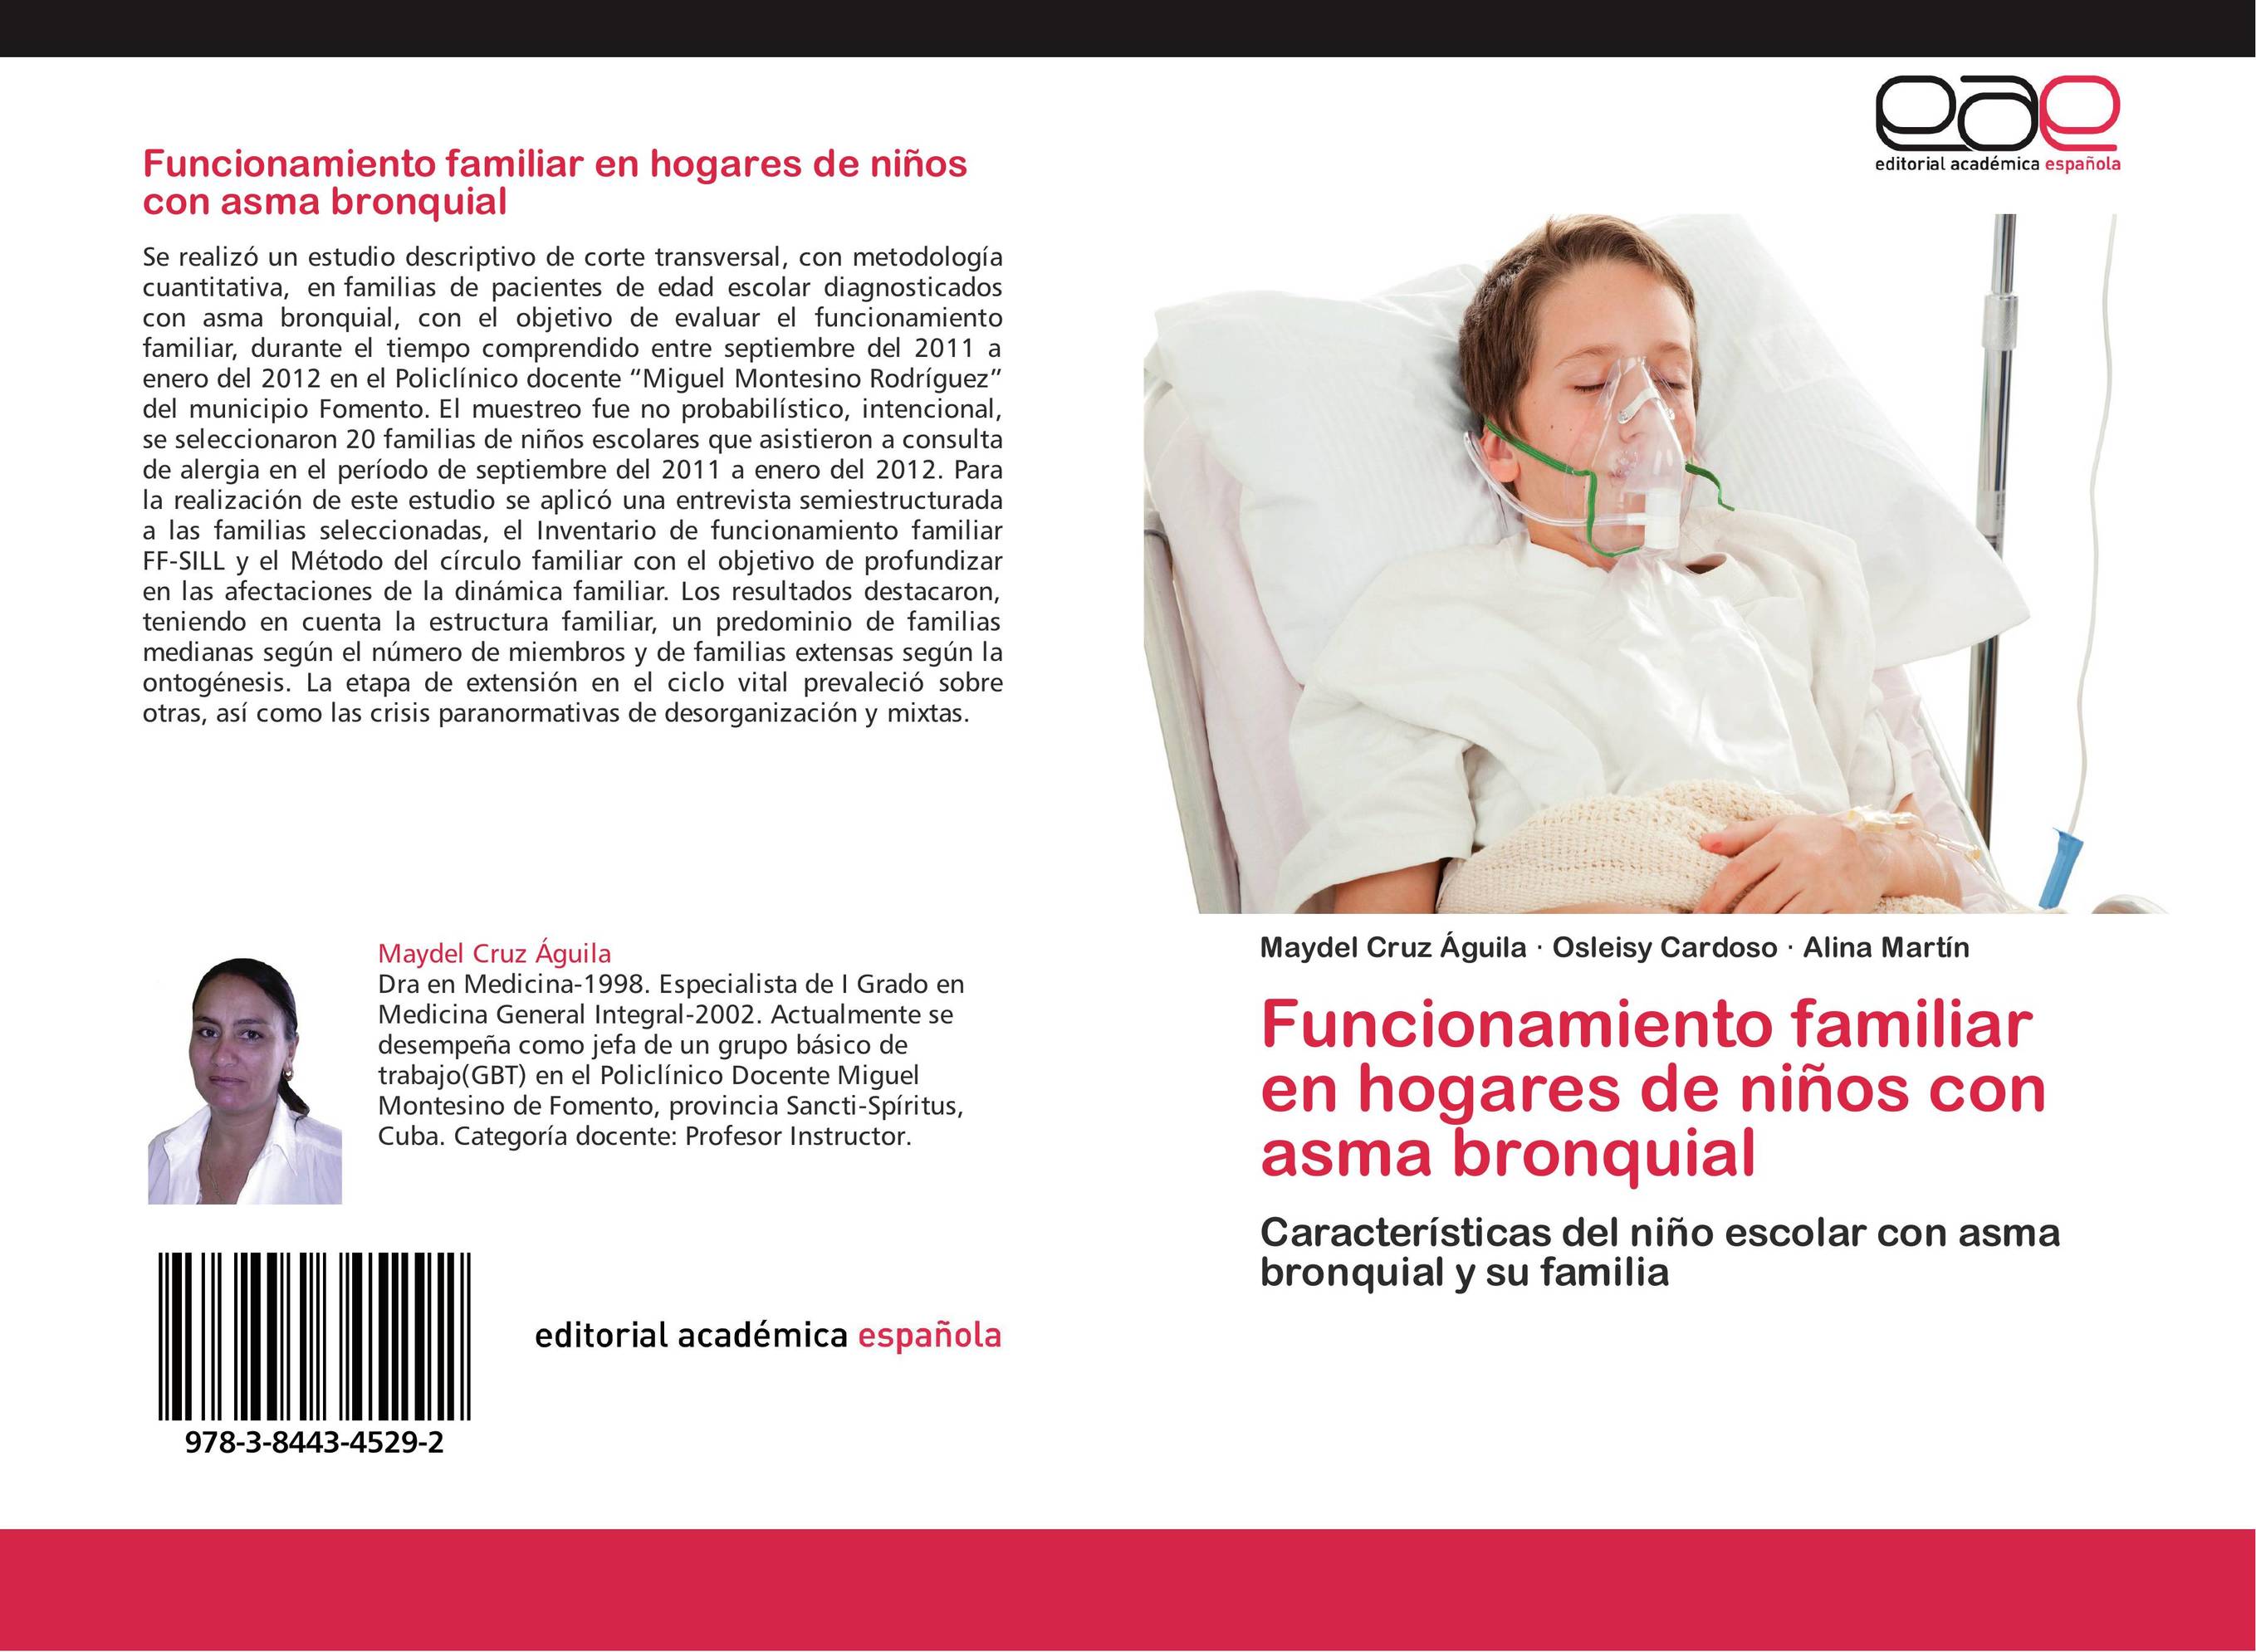 Funcionamiento familiar en hogares de niños con asma bronquial